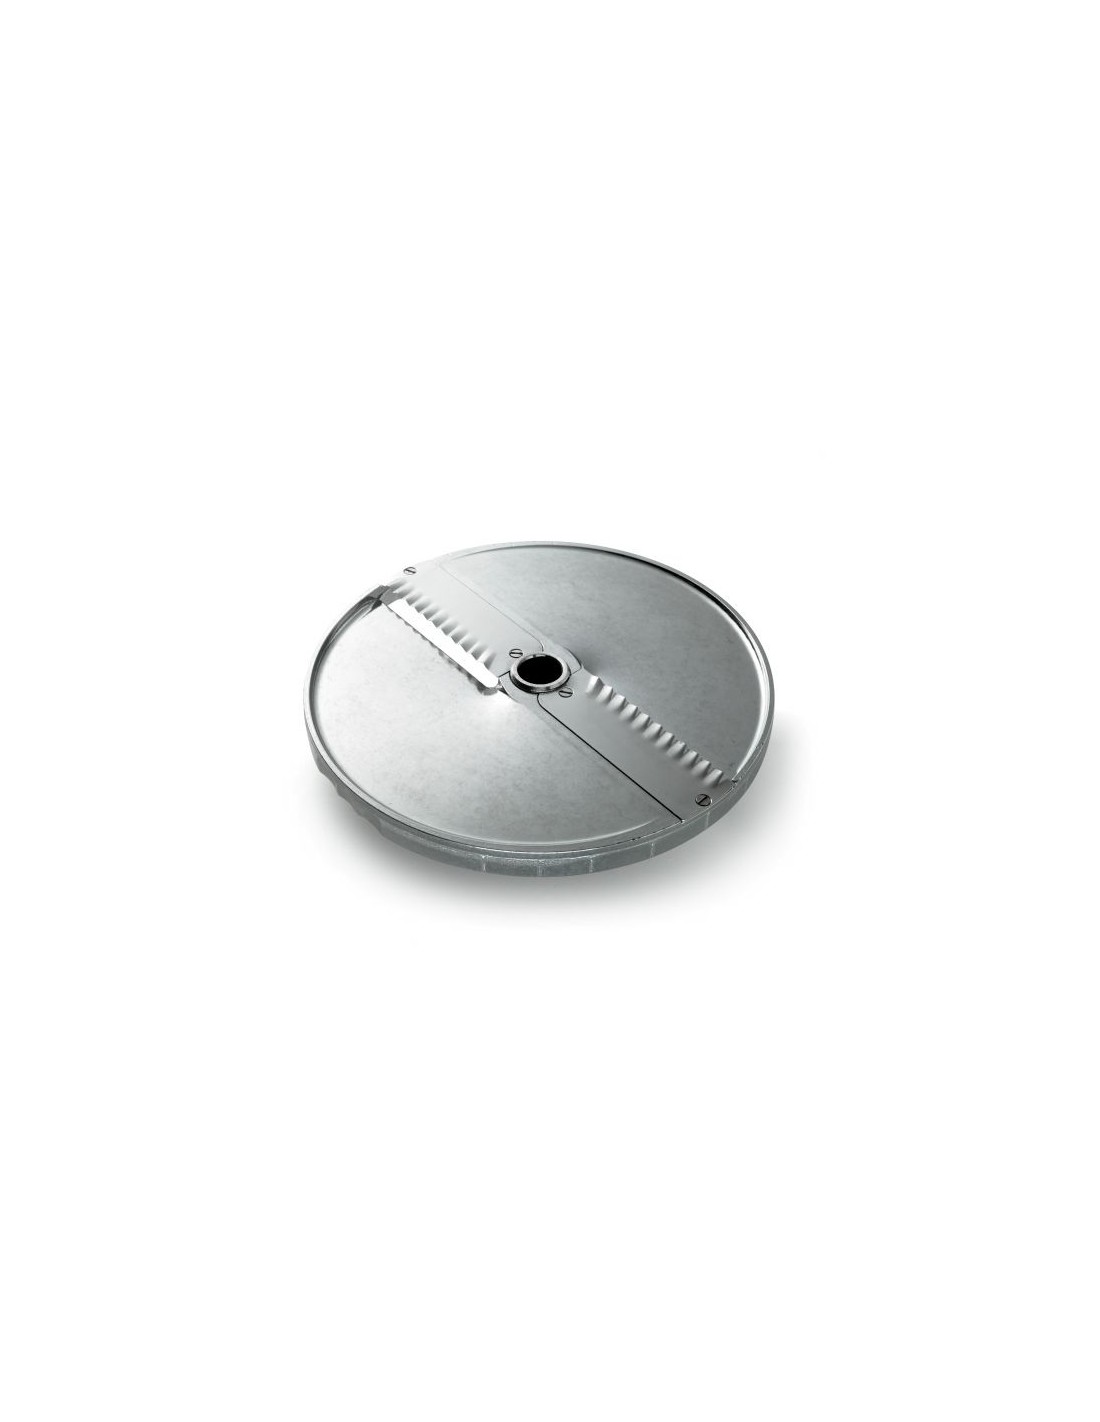 Disco para láminas corrugadas - Diámetro 205 mm - Espesor de corte mm 2